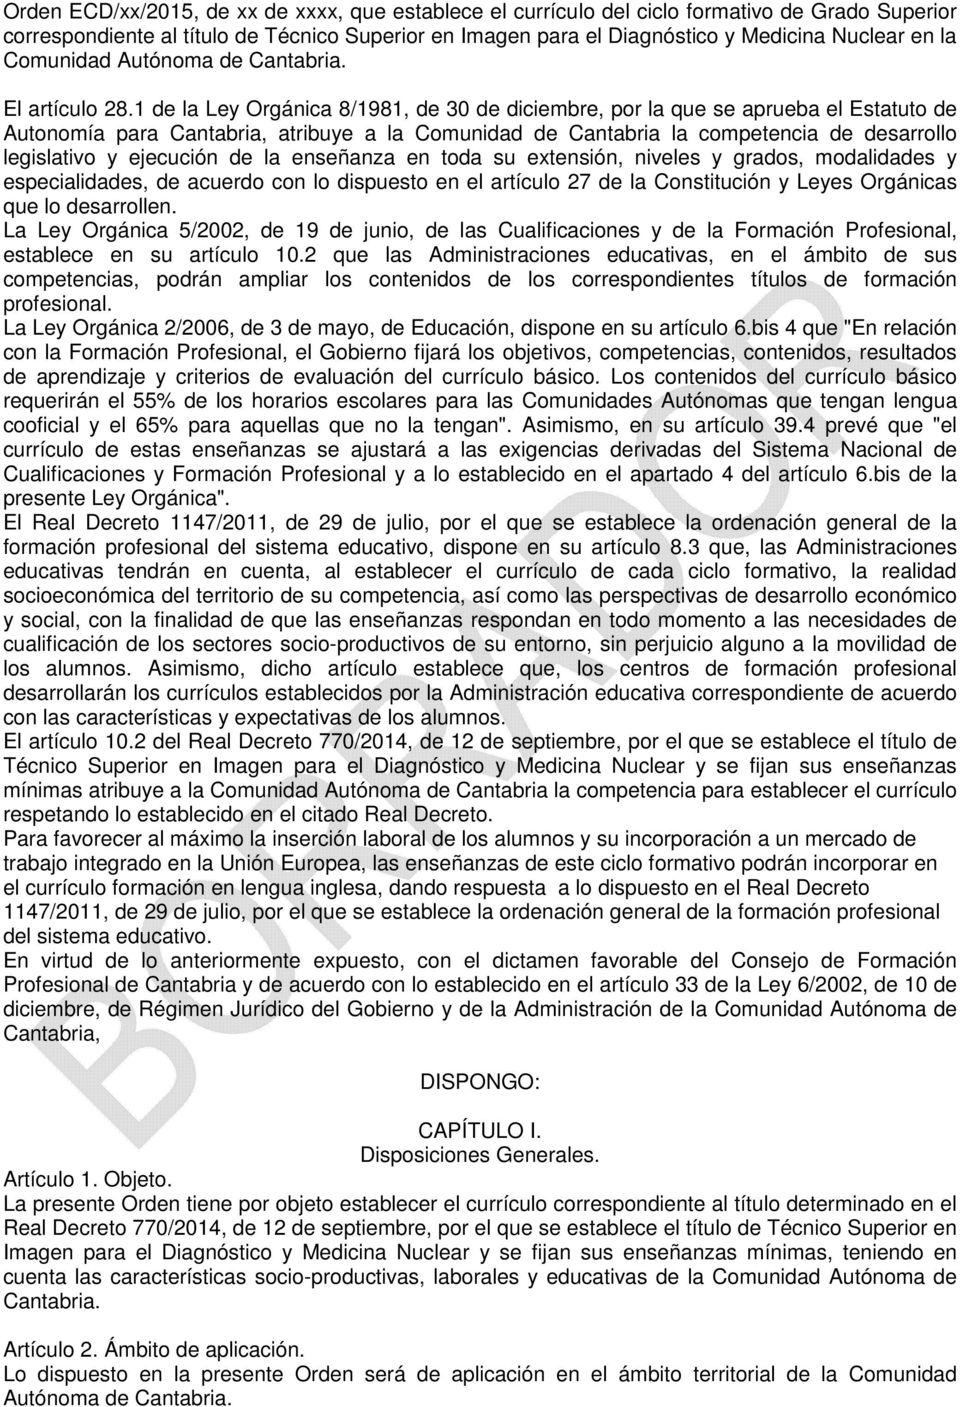 1 de la Ley Orgánica 8/1981, de 30 de diciembre, por la que se aprueba el Estatuto de Autonomía para Cantabria, atribuye a la Comunidad de Cantabria la competencia de desarrollo legislativo y